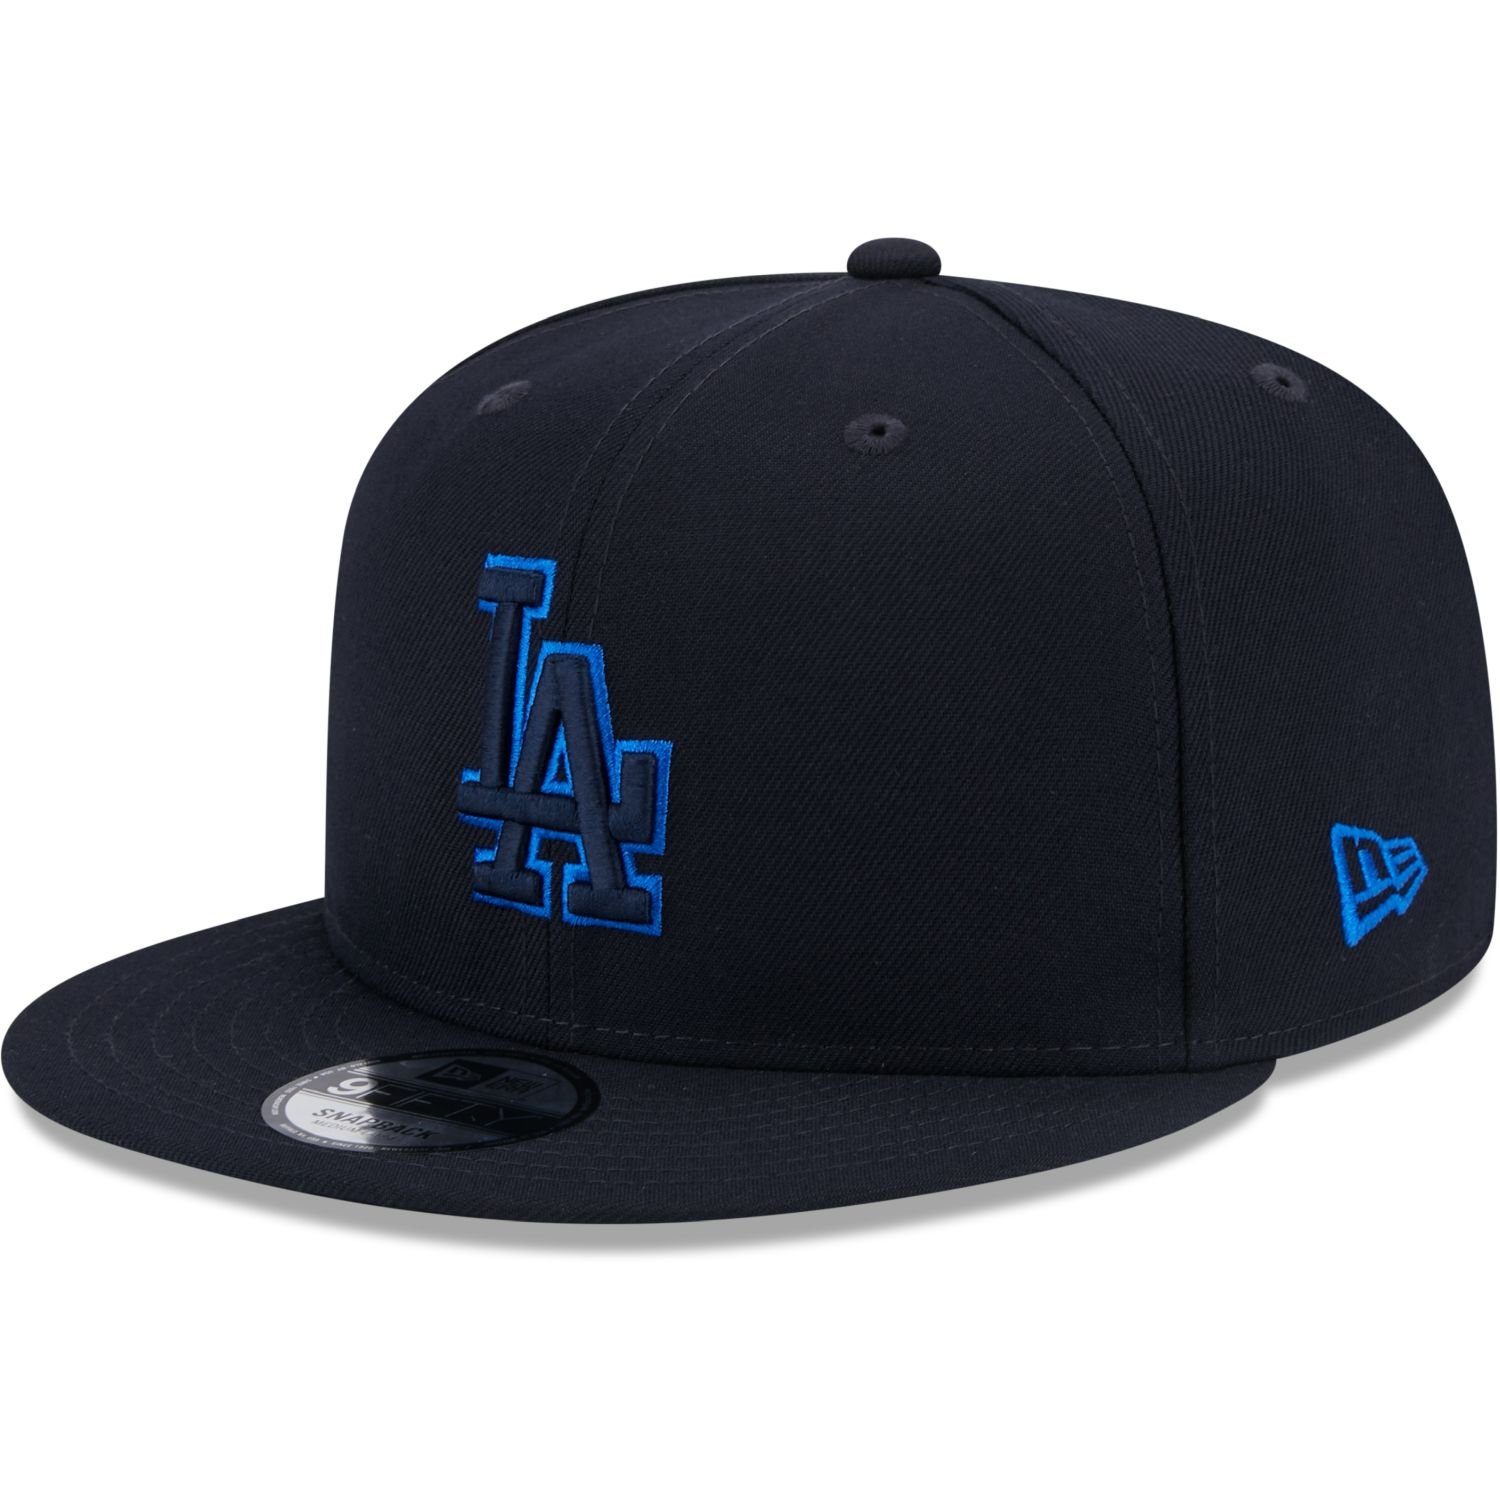 New Era Snapback Cap 9Fifty REPREVE Los Angeles Dodgers